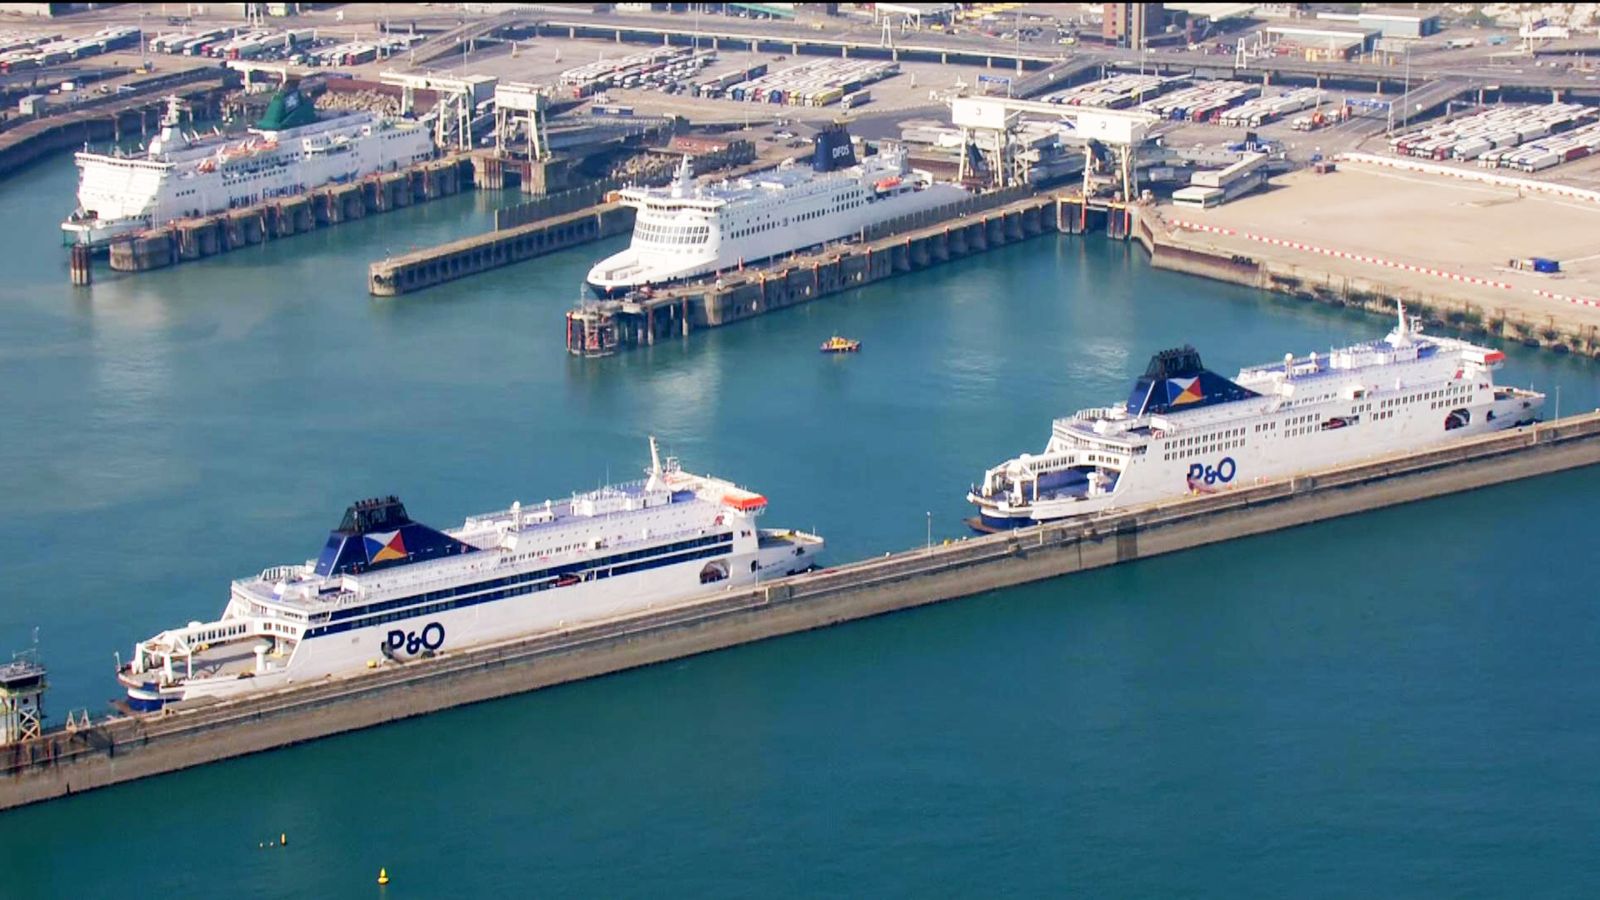 Scandale P&O: les ports rejettent le plan de Grant Shapps visant à contrôler les salaires minimums des compagnies de ferry |  Actualité économique